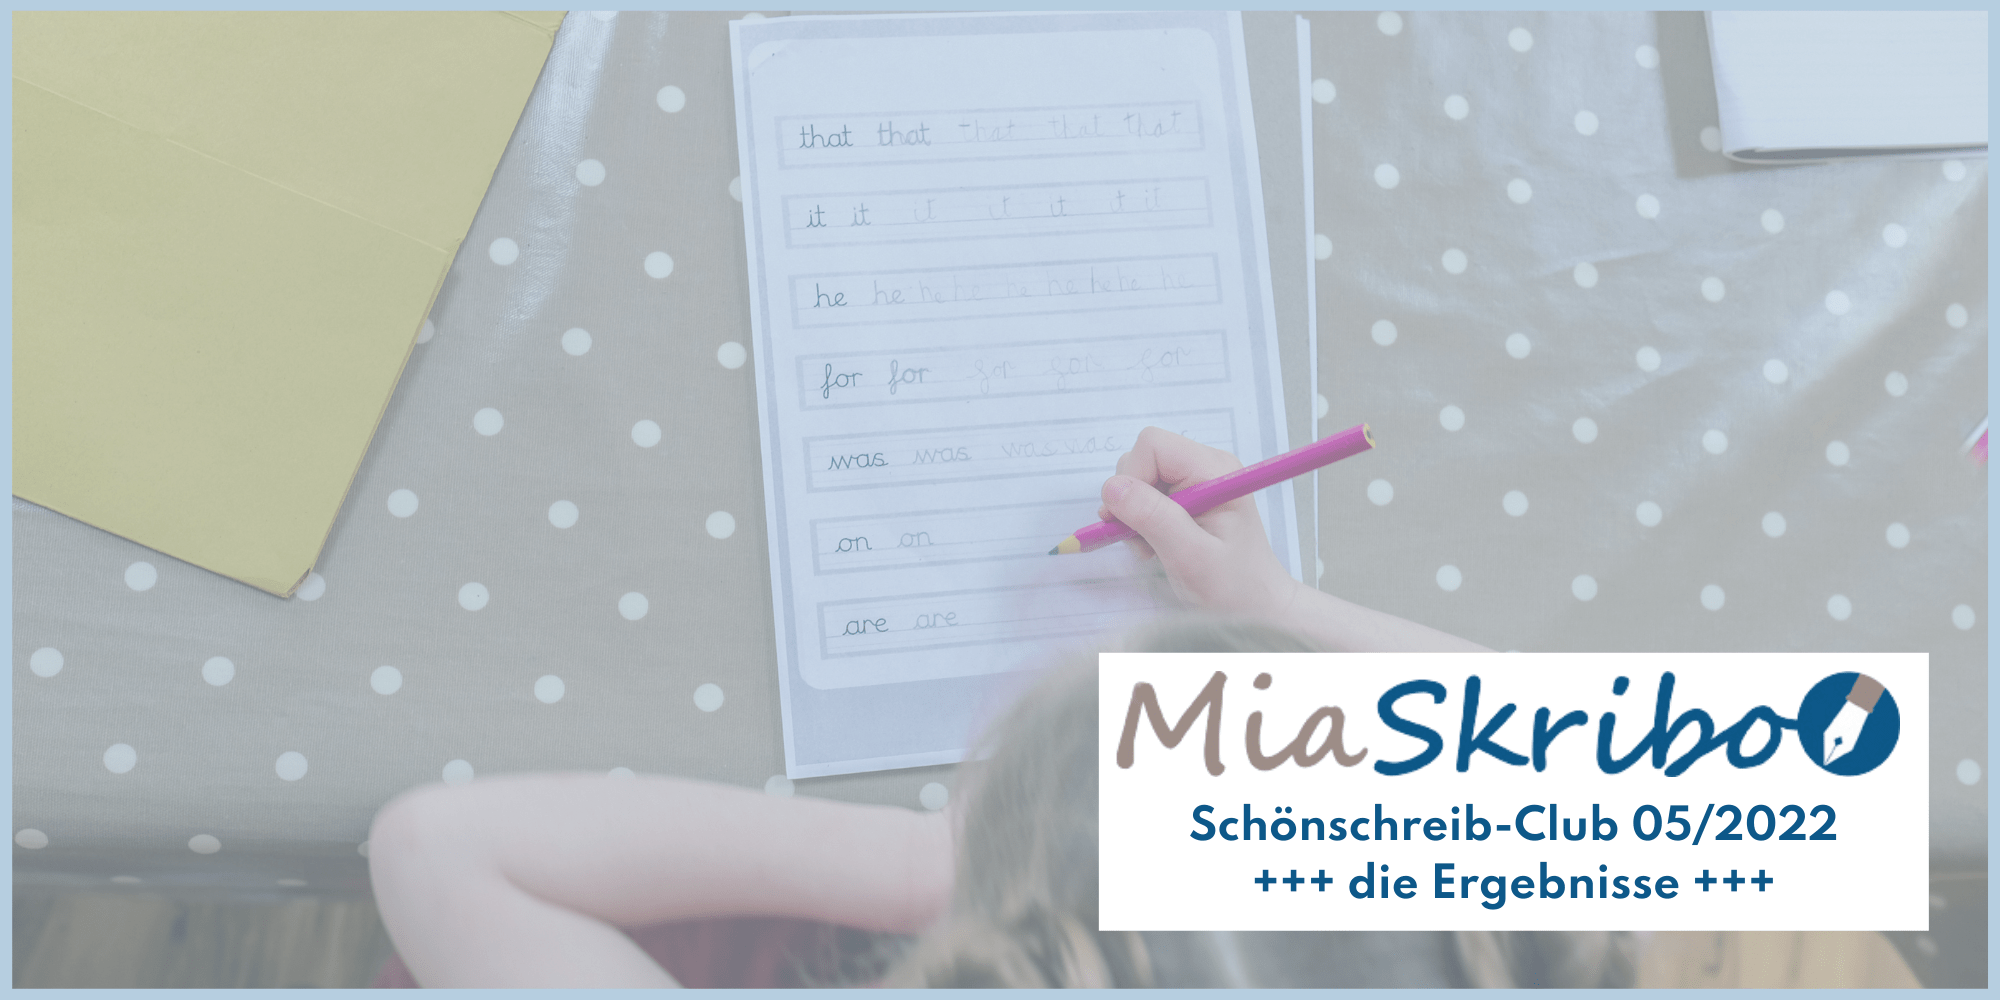 Im MiaSkriho-Schönschreib-Club stellte Josip sein Schulungskonzept fürs Handschreiben vor.